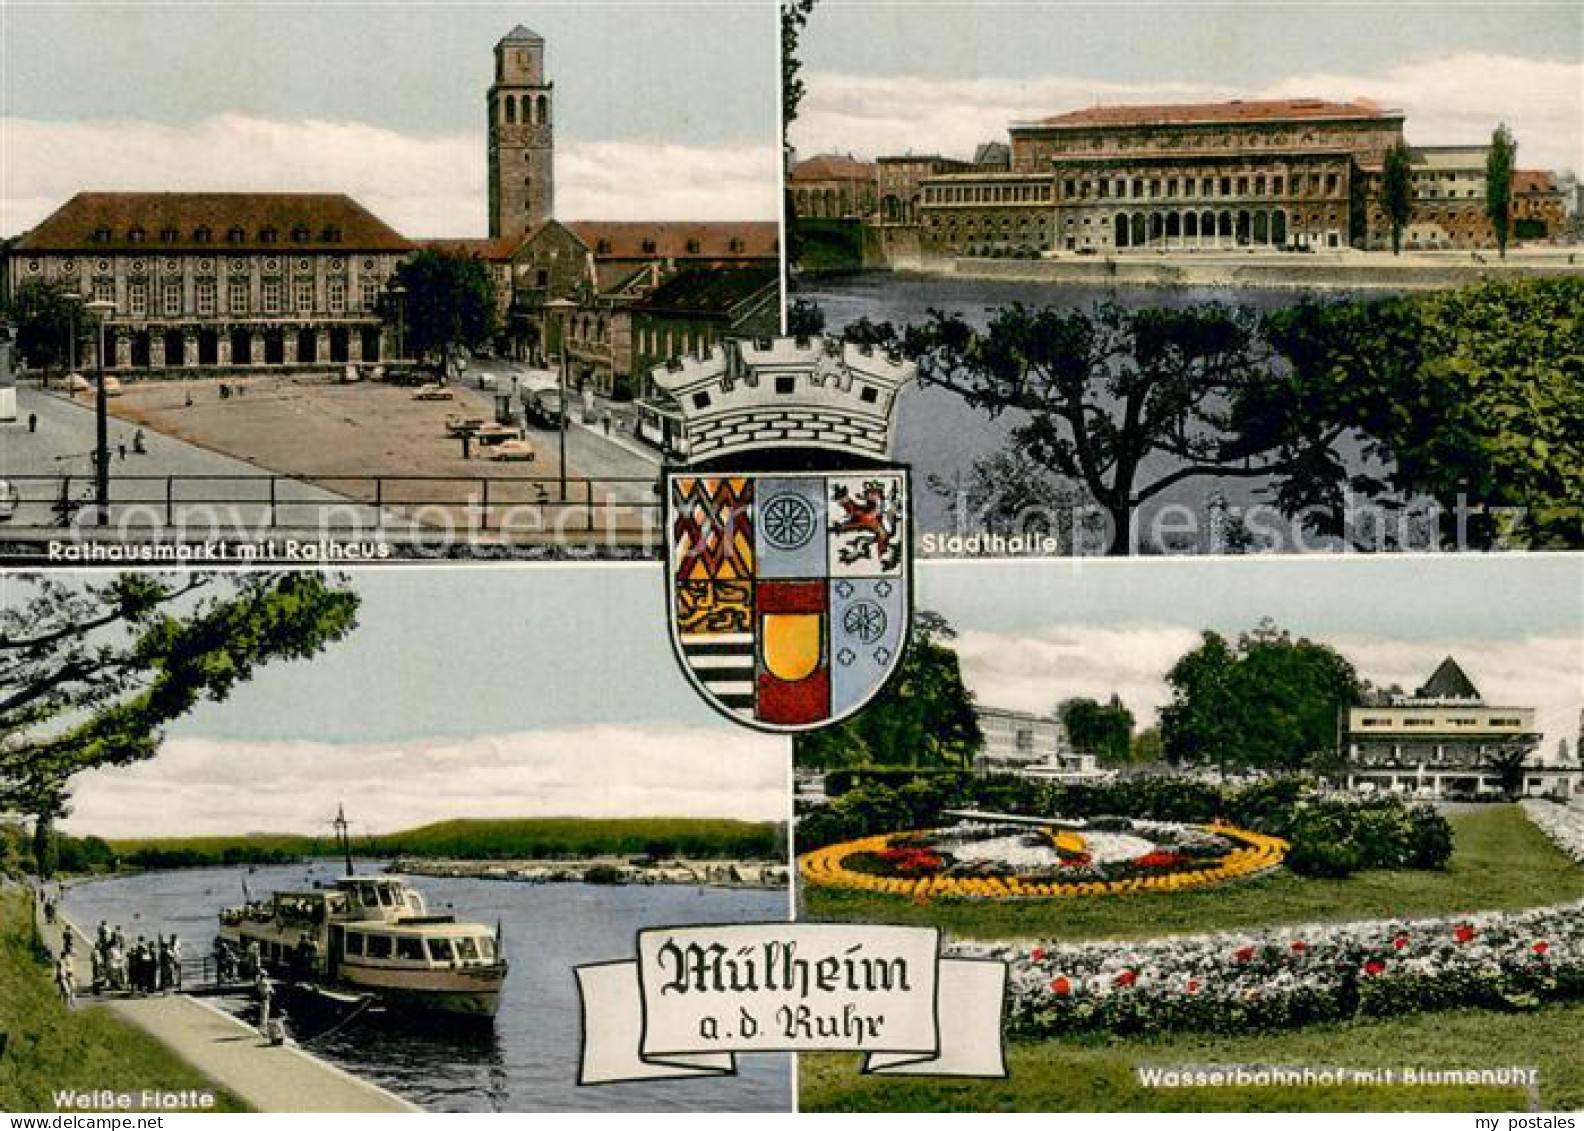 73758423 Muelheim Ruhr Rathausmarkt Stadthalle Wasserbahnhof Weisse-Flotte Muelh - Muelheim A. D. Ruhr